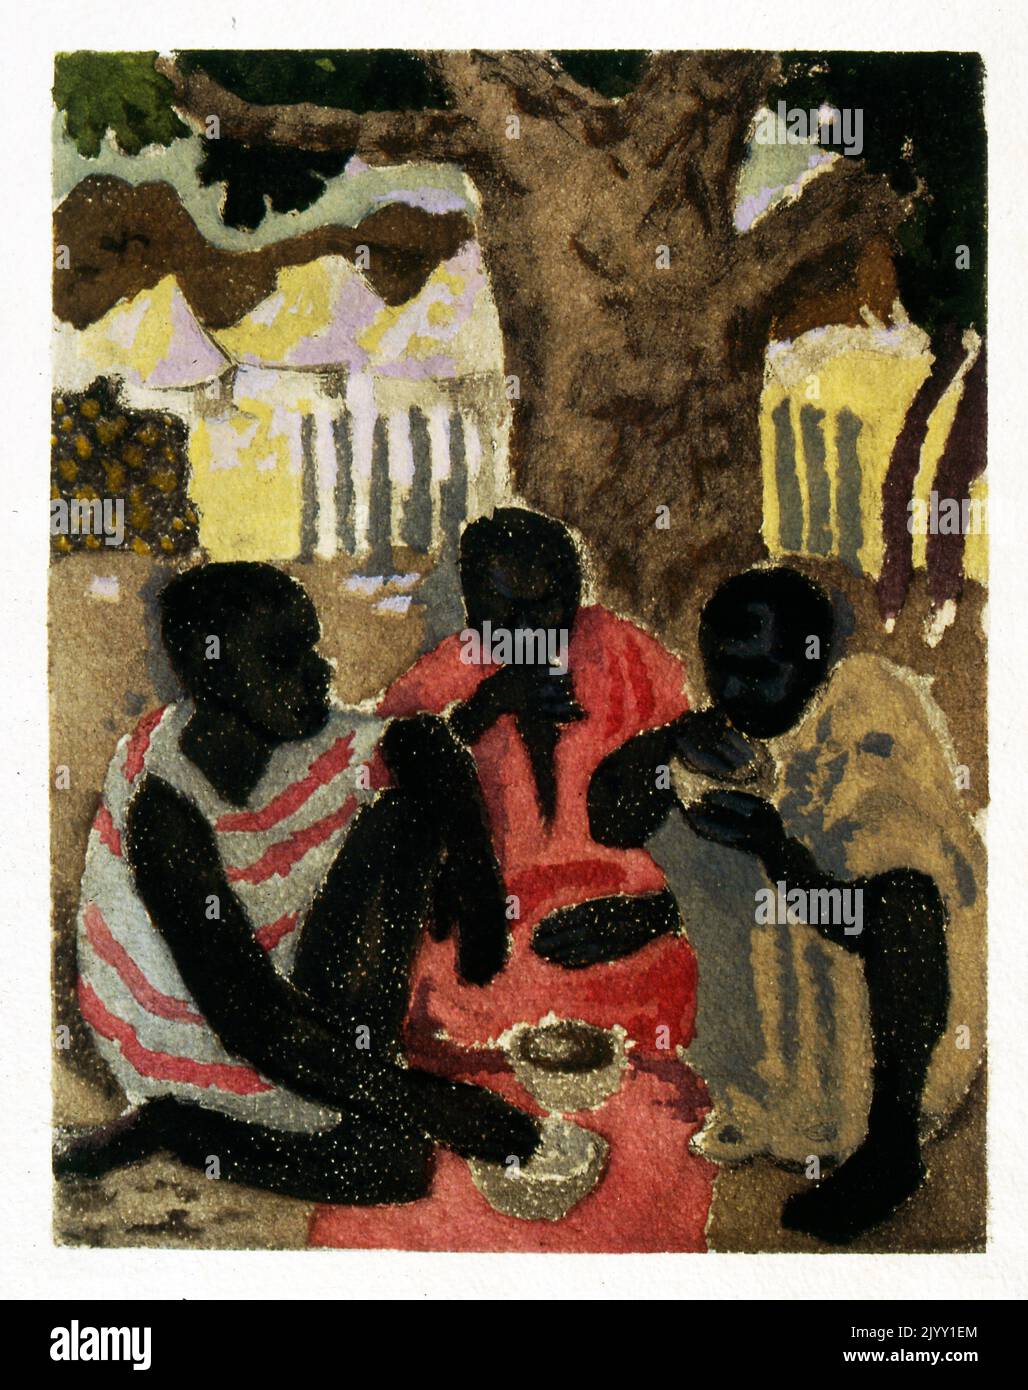 Illustration von Yves Trevedy zu 'Terres Noires' (Schwarze Länder), 1943, von Oswald Durand. Yves Trevedy (1916-1990) war ein französischer Illustrator. Oswald Durand, (1888 - 1982) war ein französischer Kolonialverwalter. 1946 war er Gouverneur von Senegal. Stockfoto